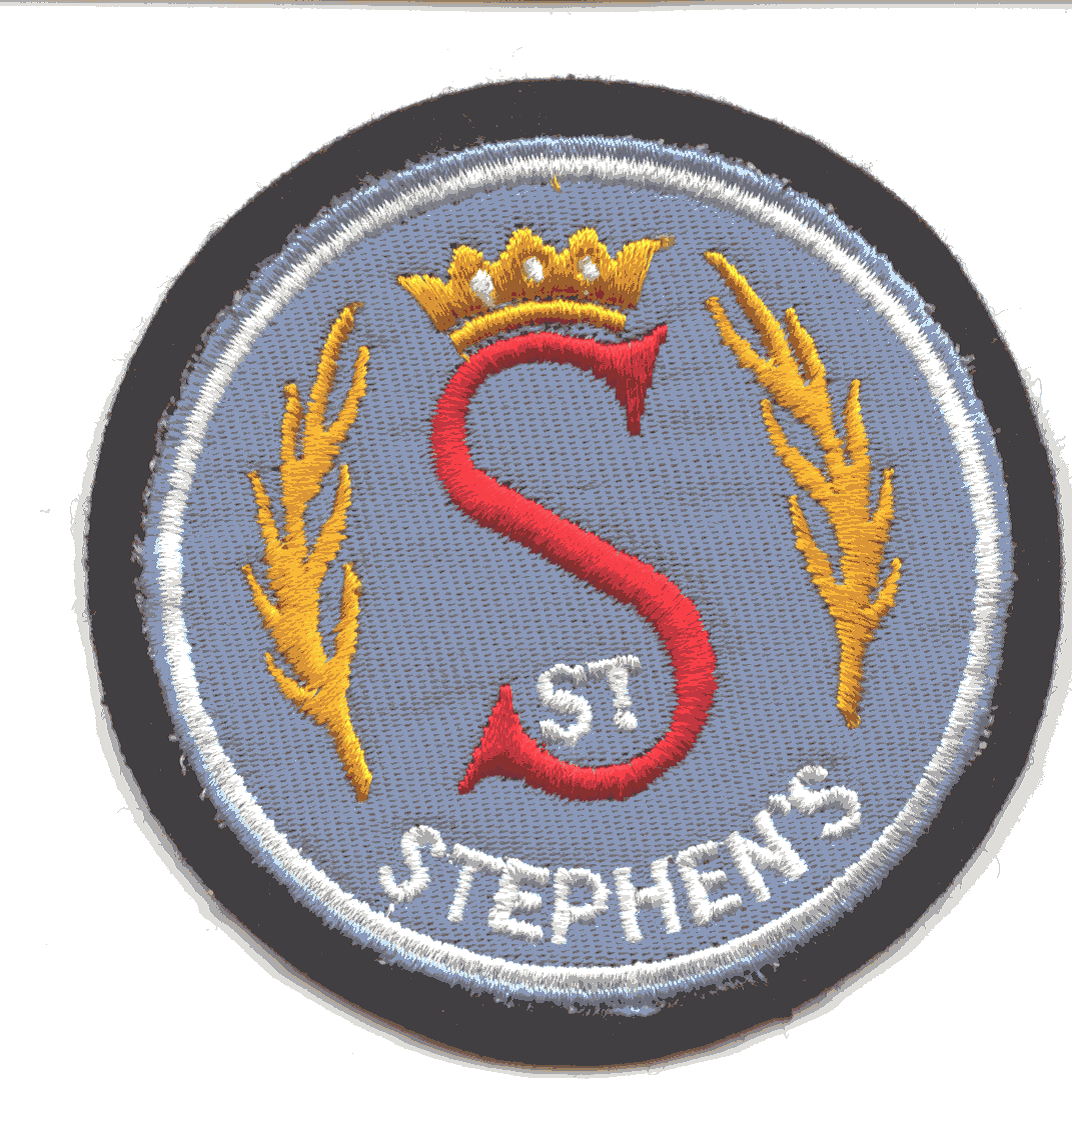 St Stephen's Primary School